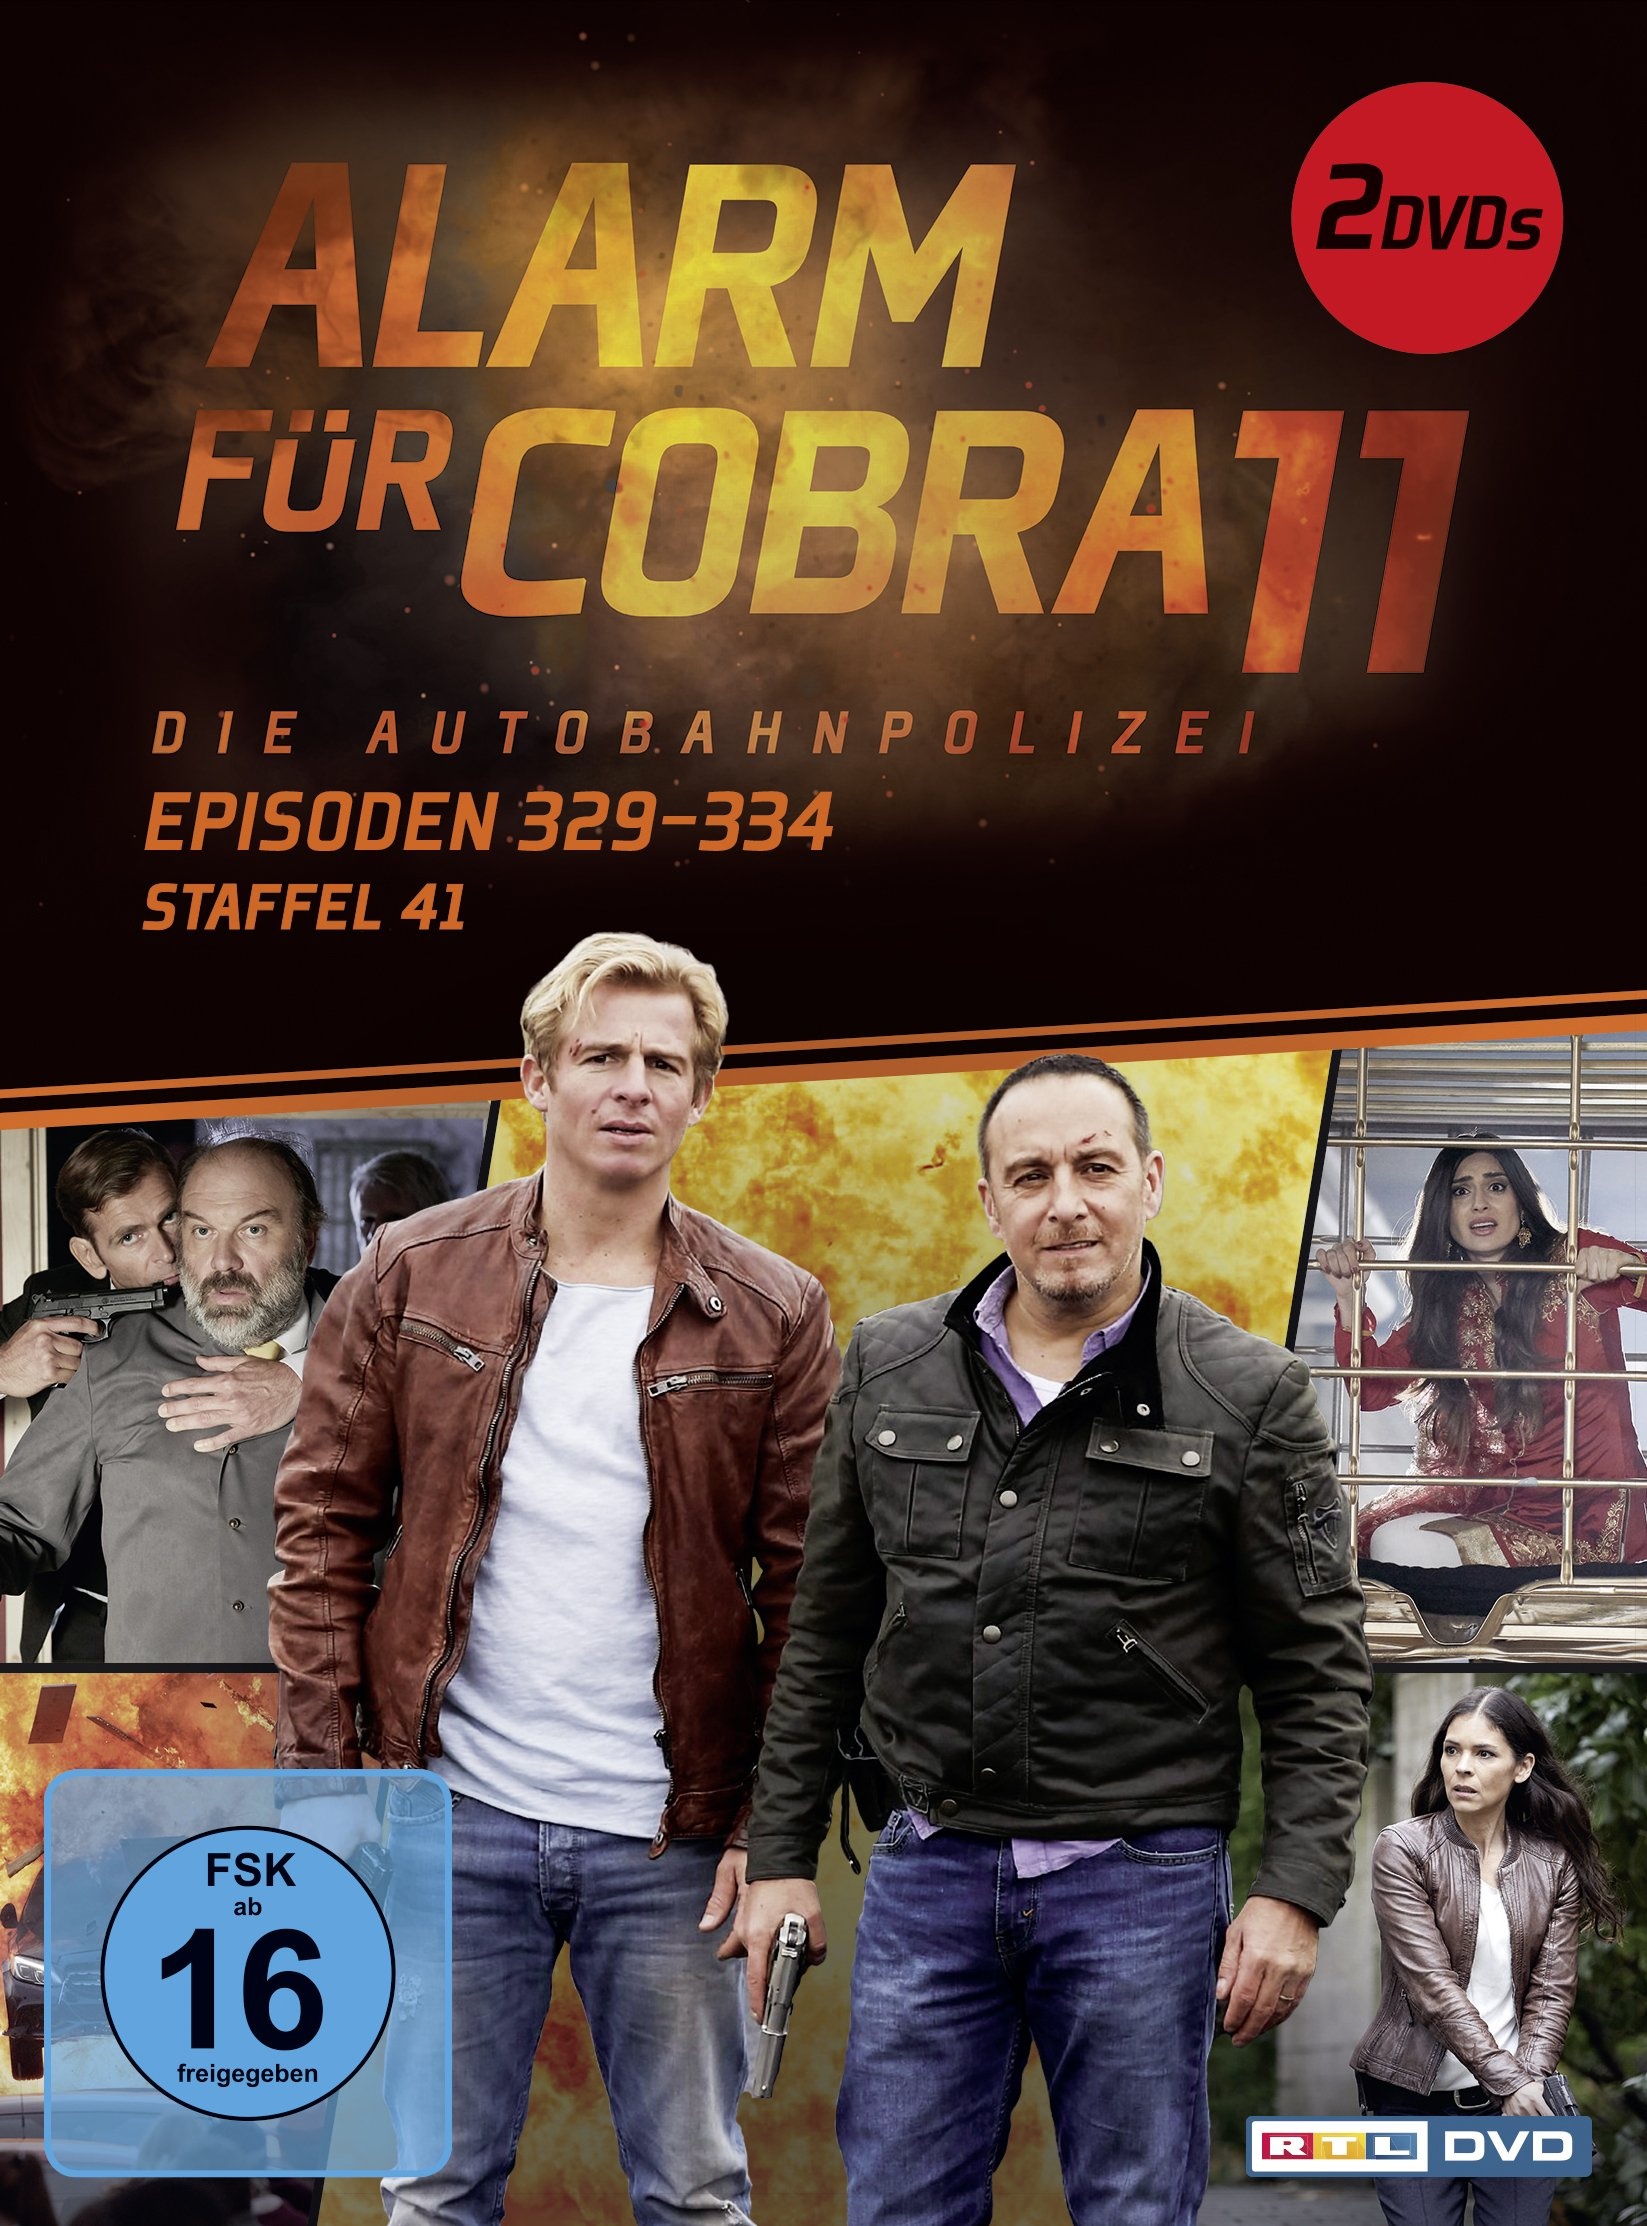 Alarm für Cobra 11 - Staffel 41, Episoden 329-334 [2 DVDs]